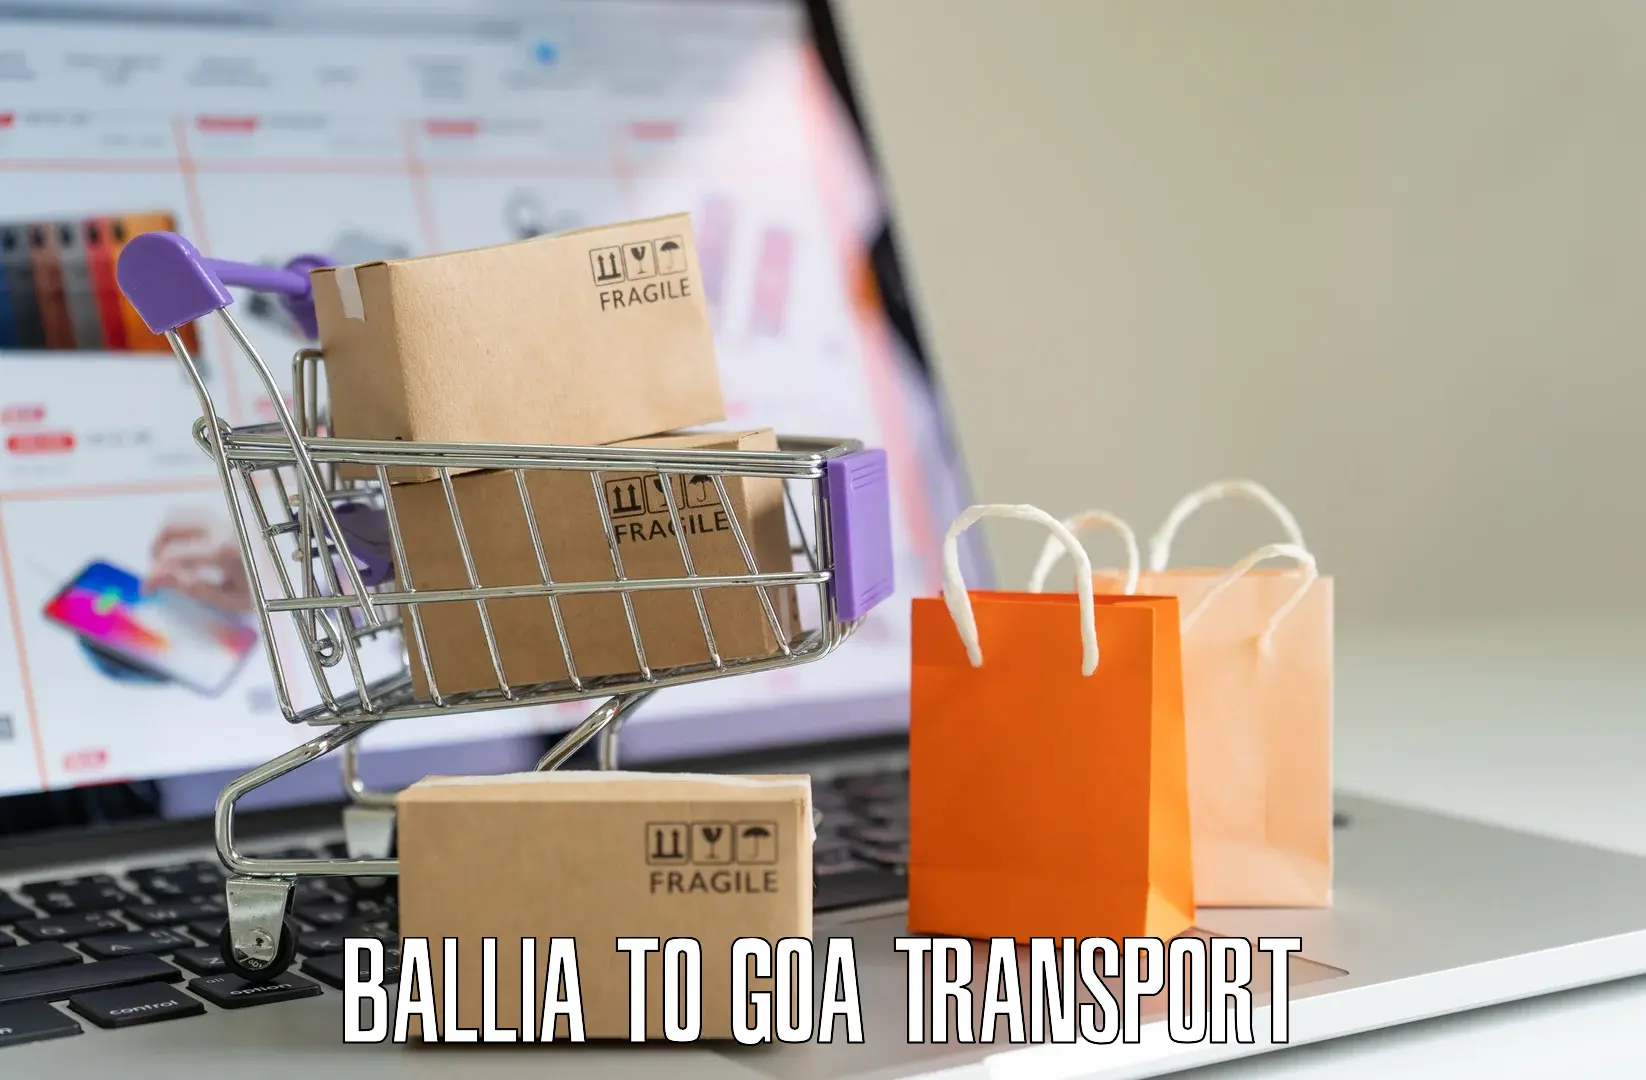 Sending bike to another city Ballia to IIT Goa